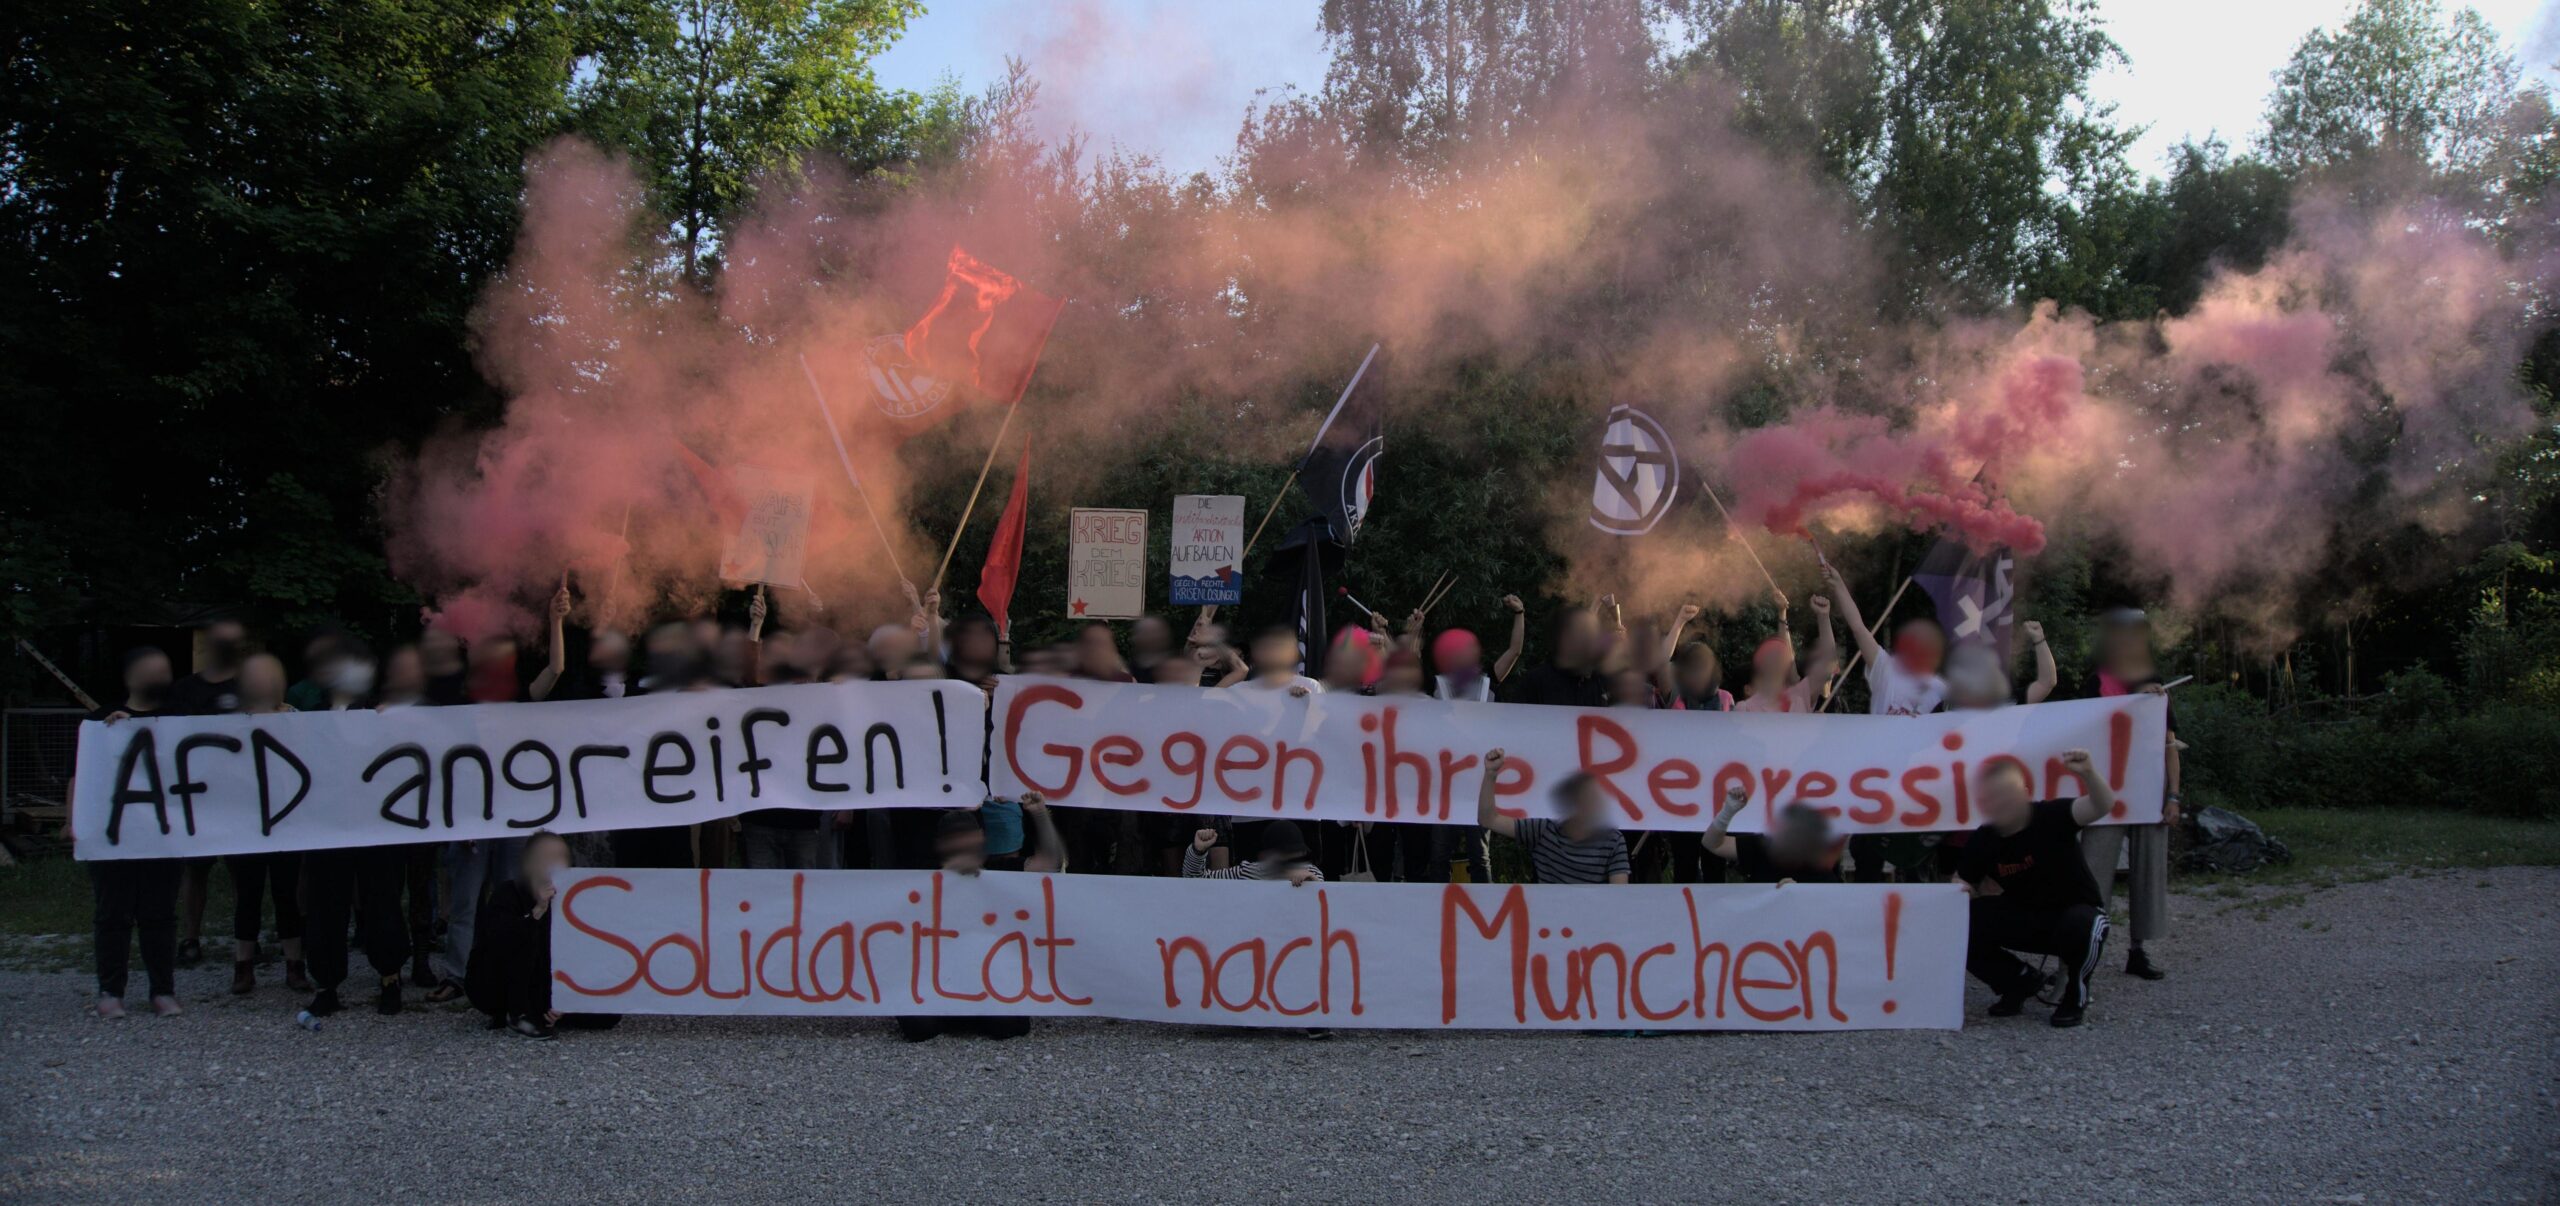 Hausdurchsuchung bei Antifaschist in München! Gegen ihre Repression! Solidarität nach München!